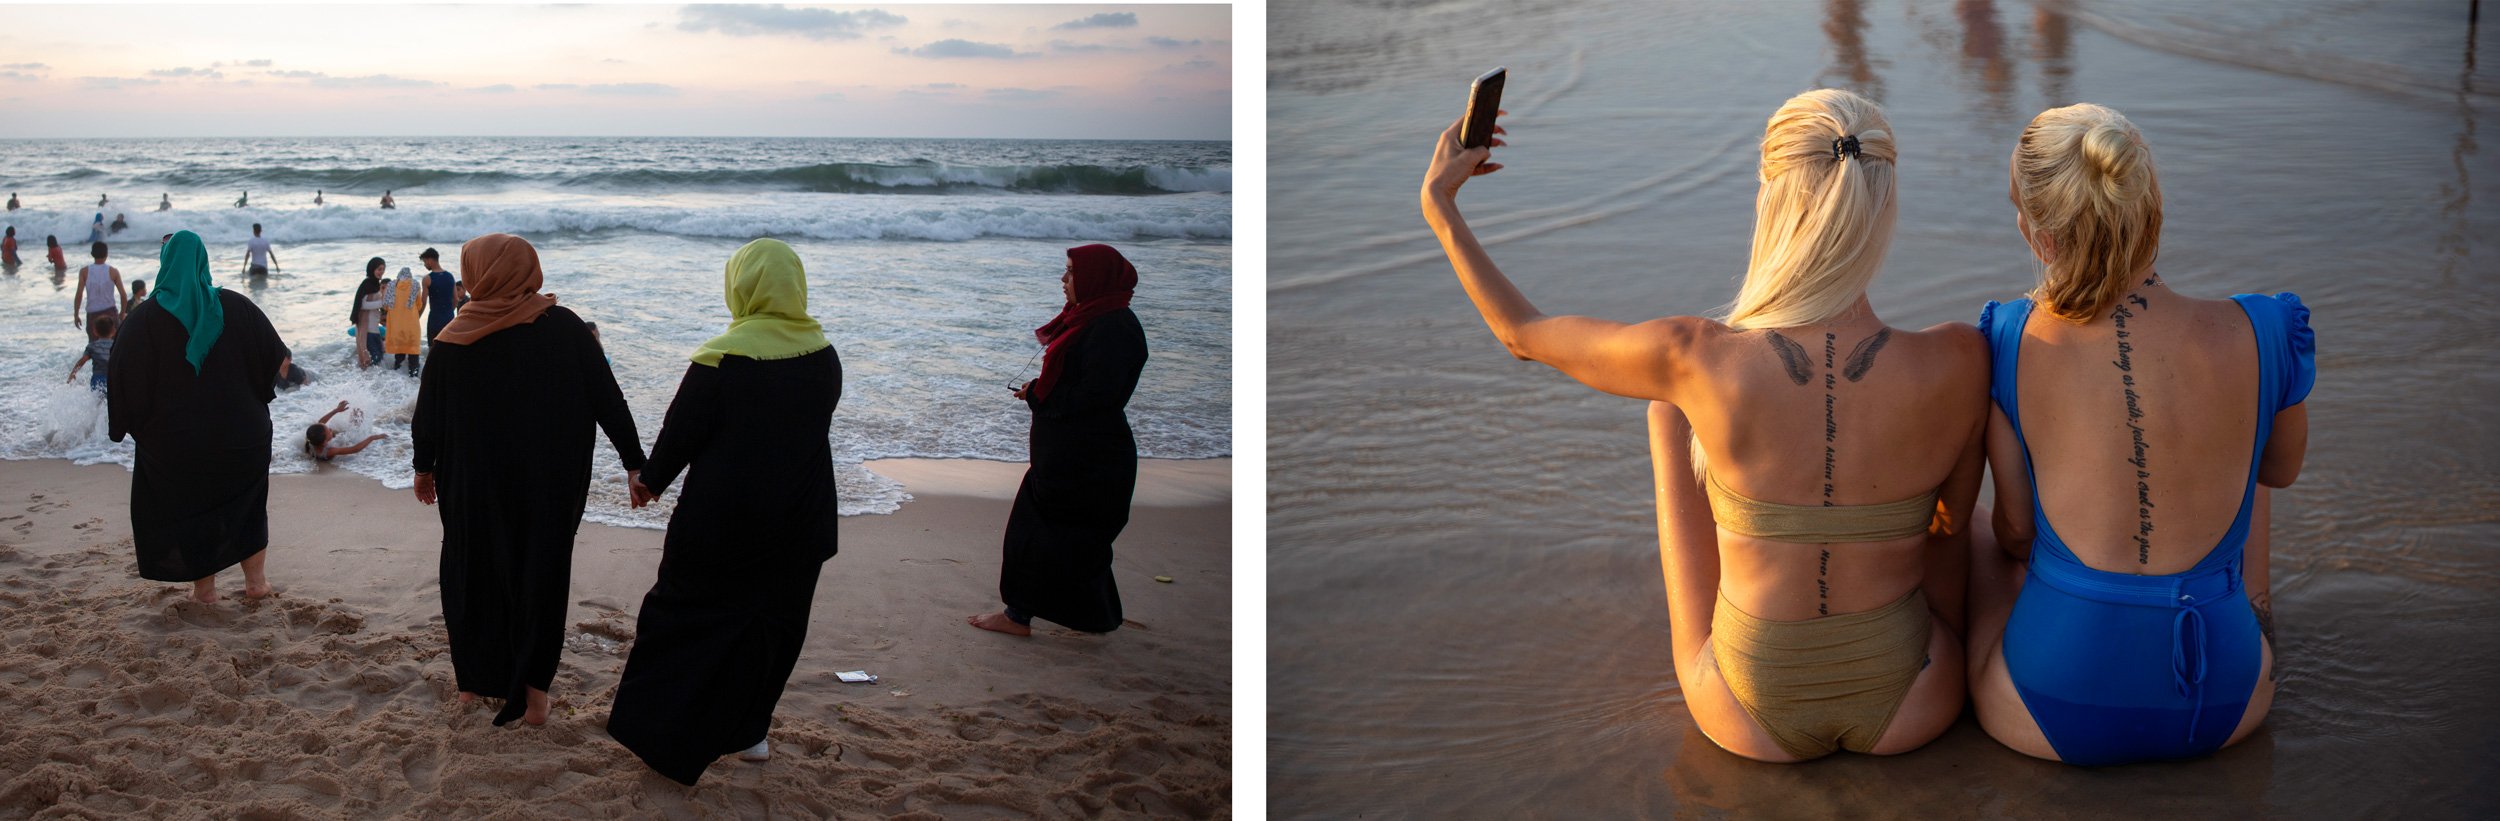 Чат тель авив общение. Тель Авив пляж девушки. Девушки Тель Авива. Девушка на пляже в Тель Авиве.